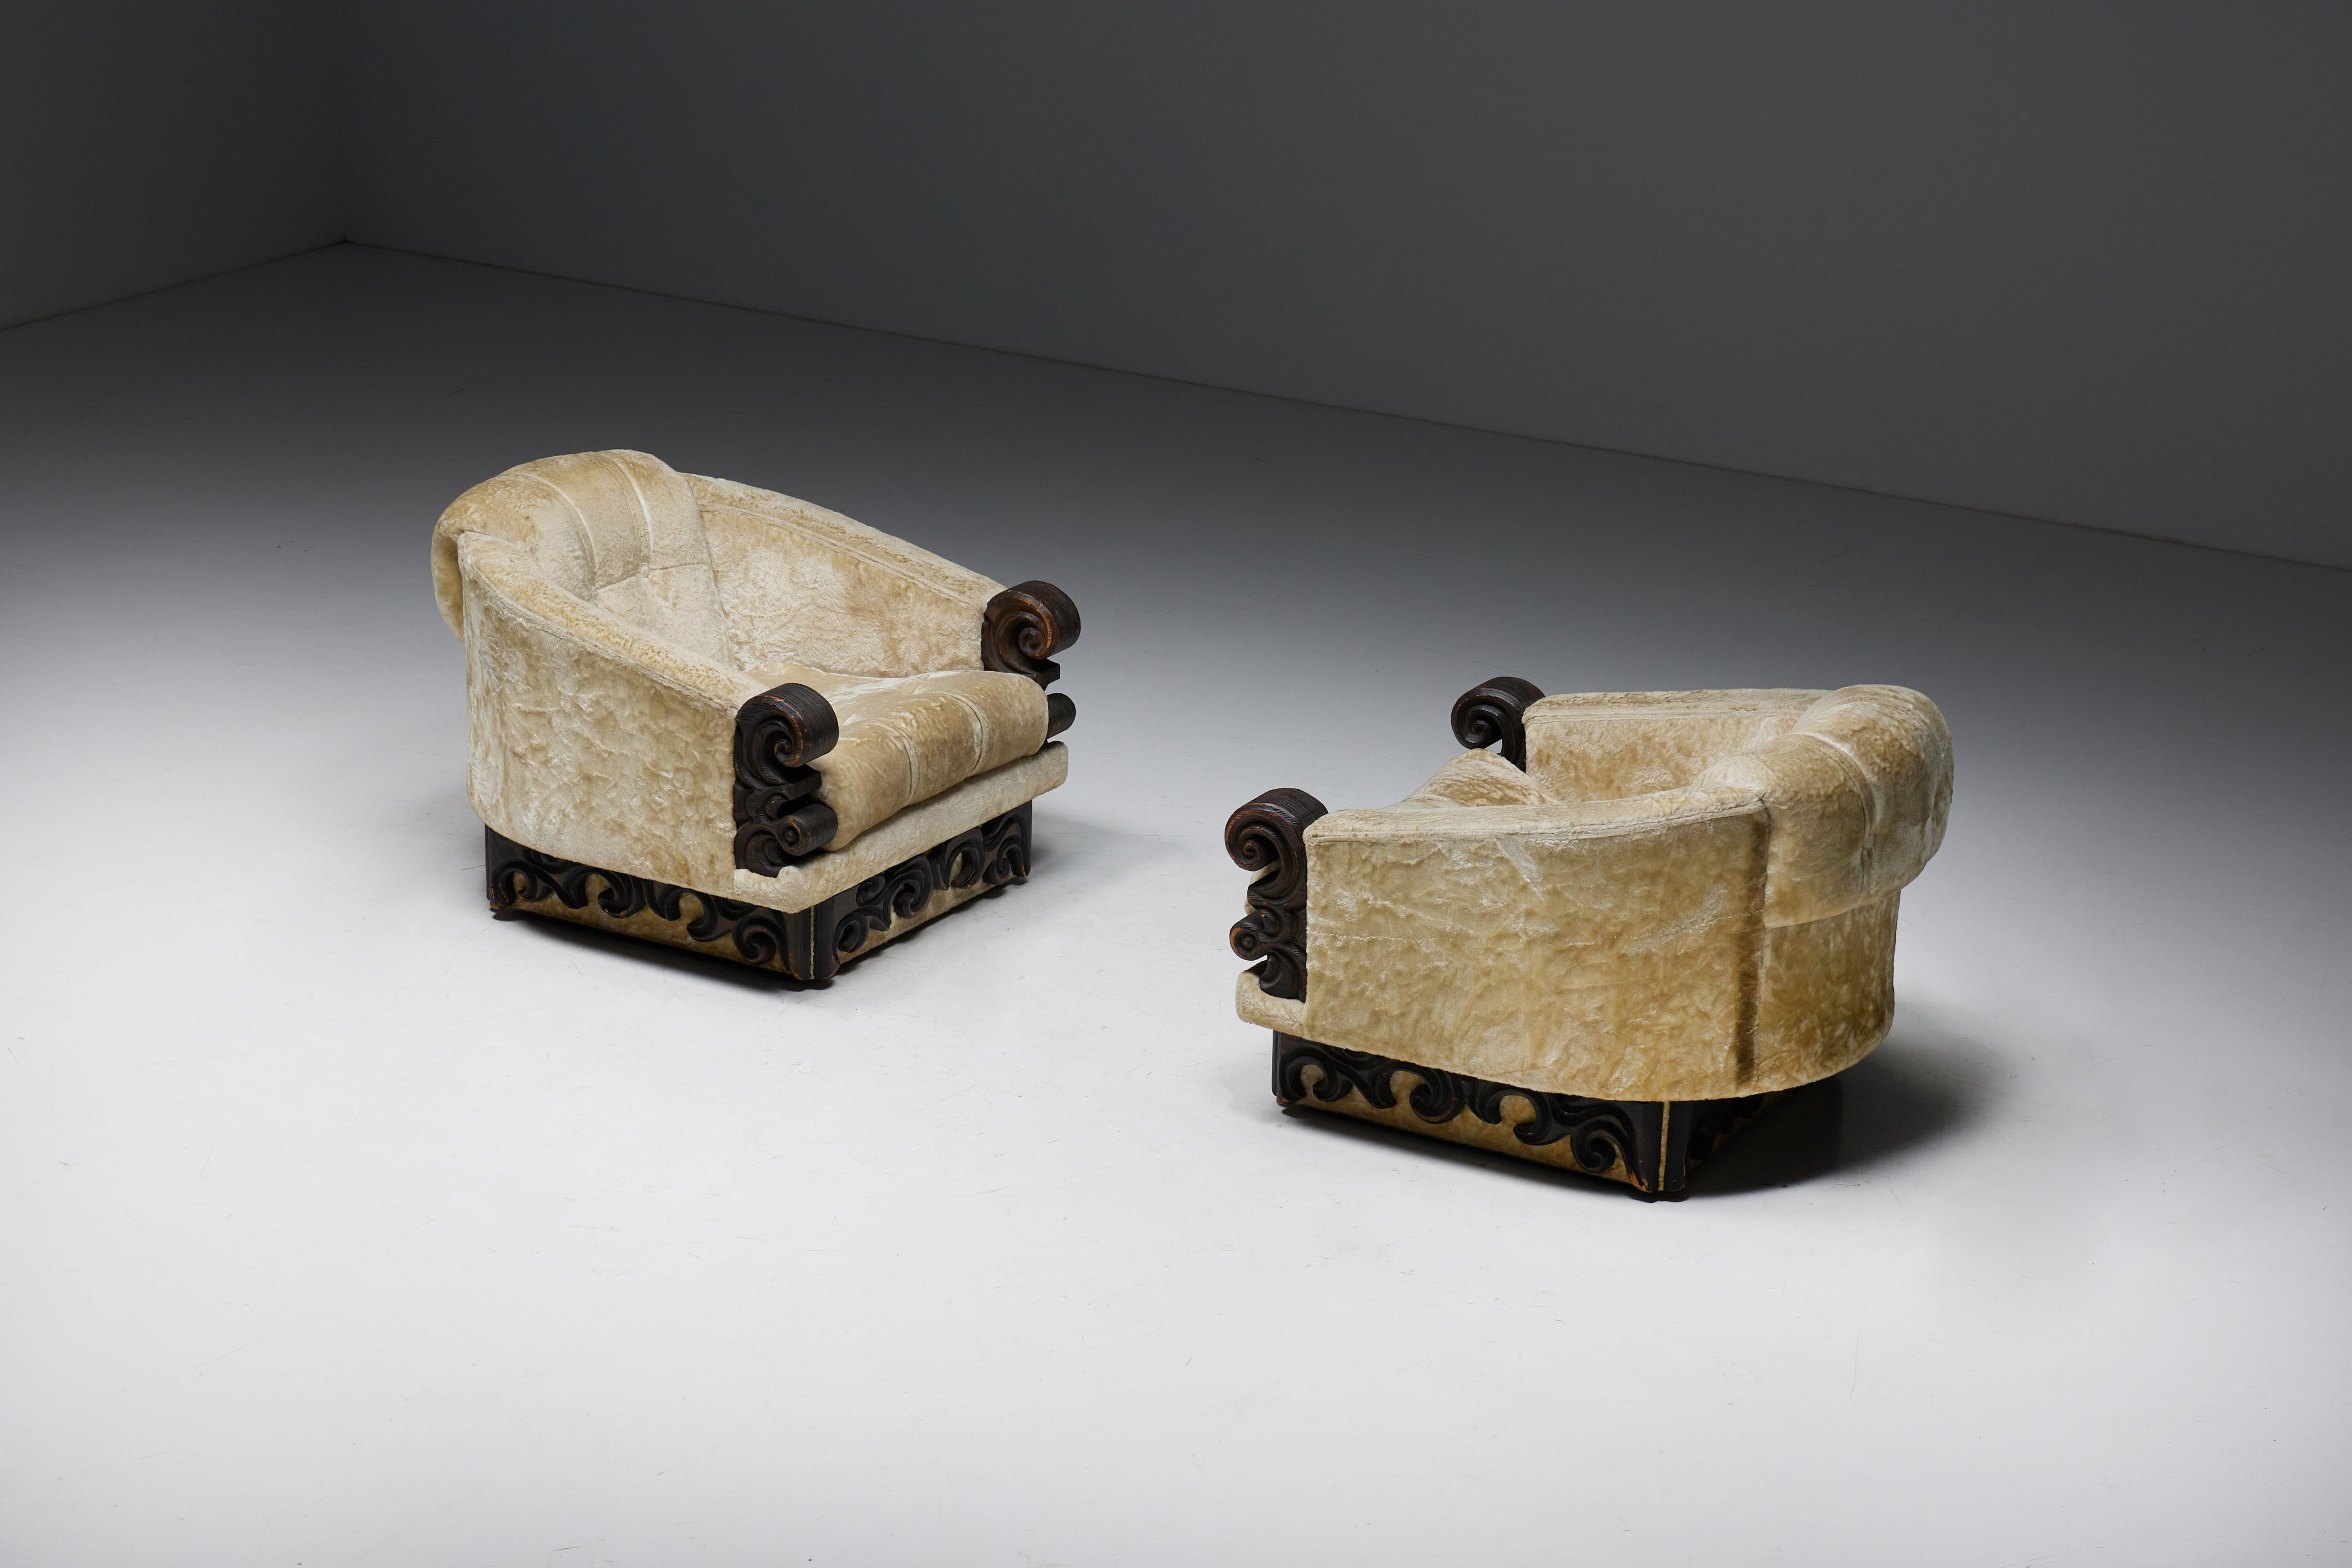 Japanoiserie Art Deco Expressionist Lounge Chairs mit dem kühnen Geist des Expressionismus. Diese Stühle verbinden zeitlose Eleganz mit avantgardistischem Design. Die luxuriöse Samtpolsterung umhüllt Sie mit Komfort, während der edle Rahmen aus